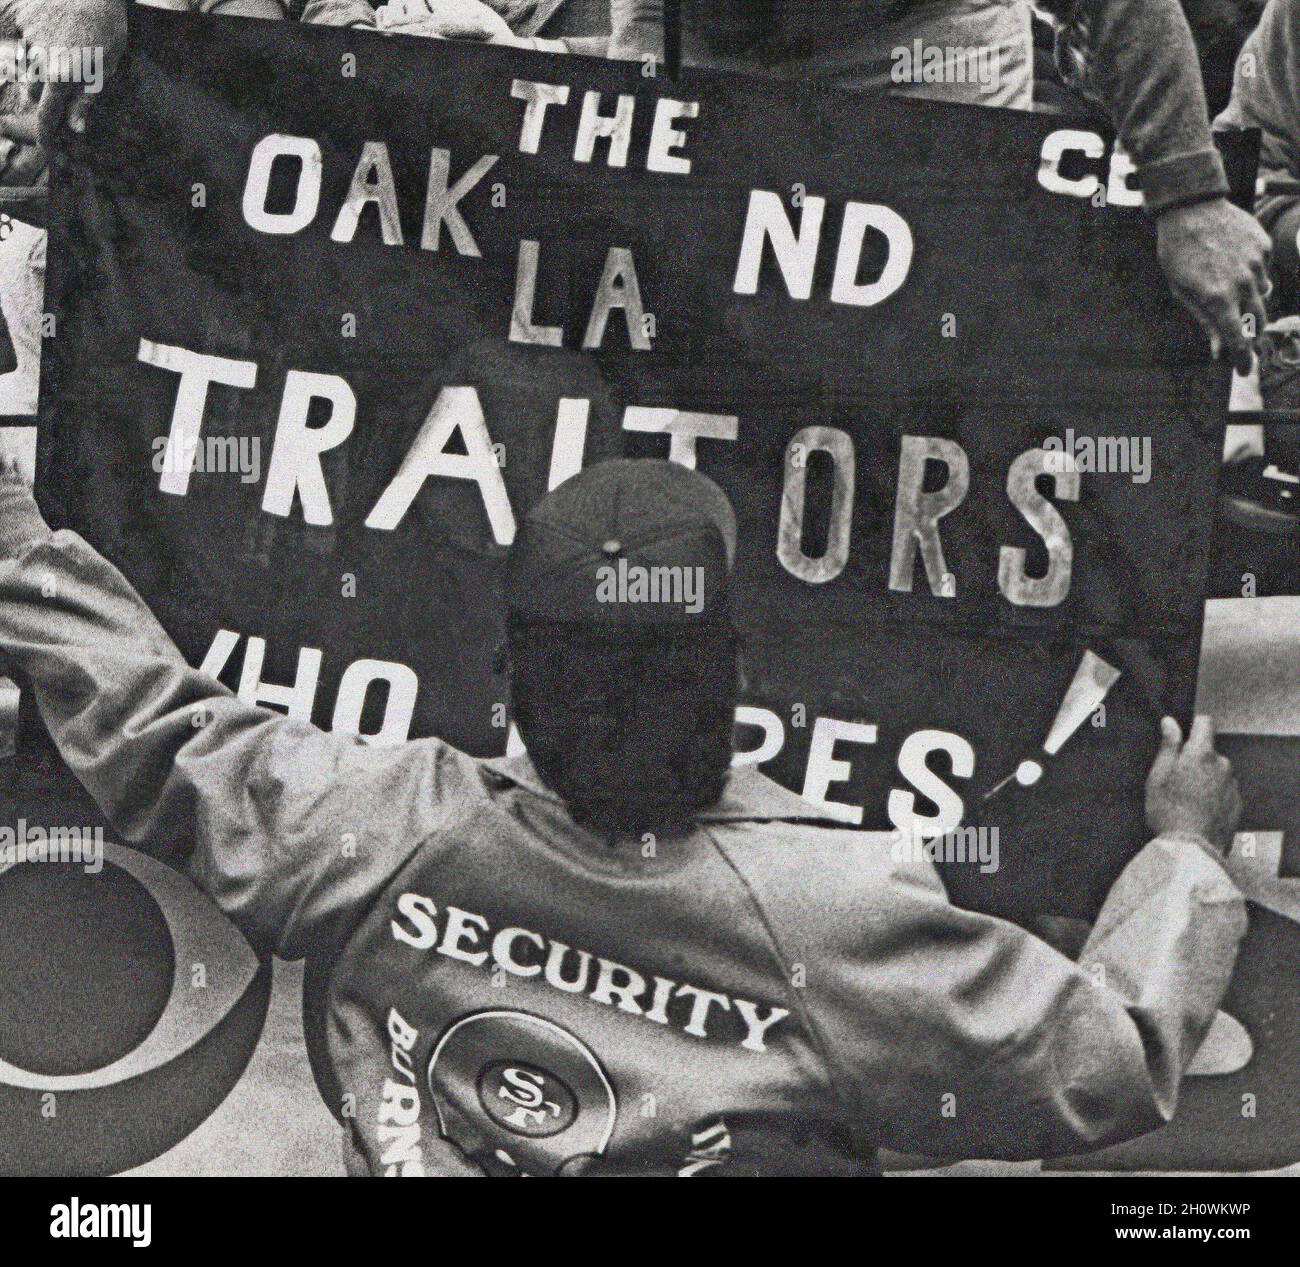 San Francisco 49ers Football team Security persona durante una partita contro i Raiders nel Candlestick Park di San Francisco rimuovendo il banner 'Oakland Traitors' dopo che i Raiders si sono trasferiti da Oakland a Los Angeles, California, 1980s Foto Stock